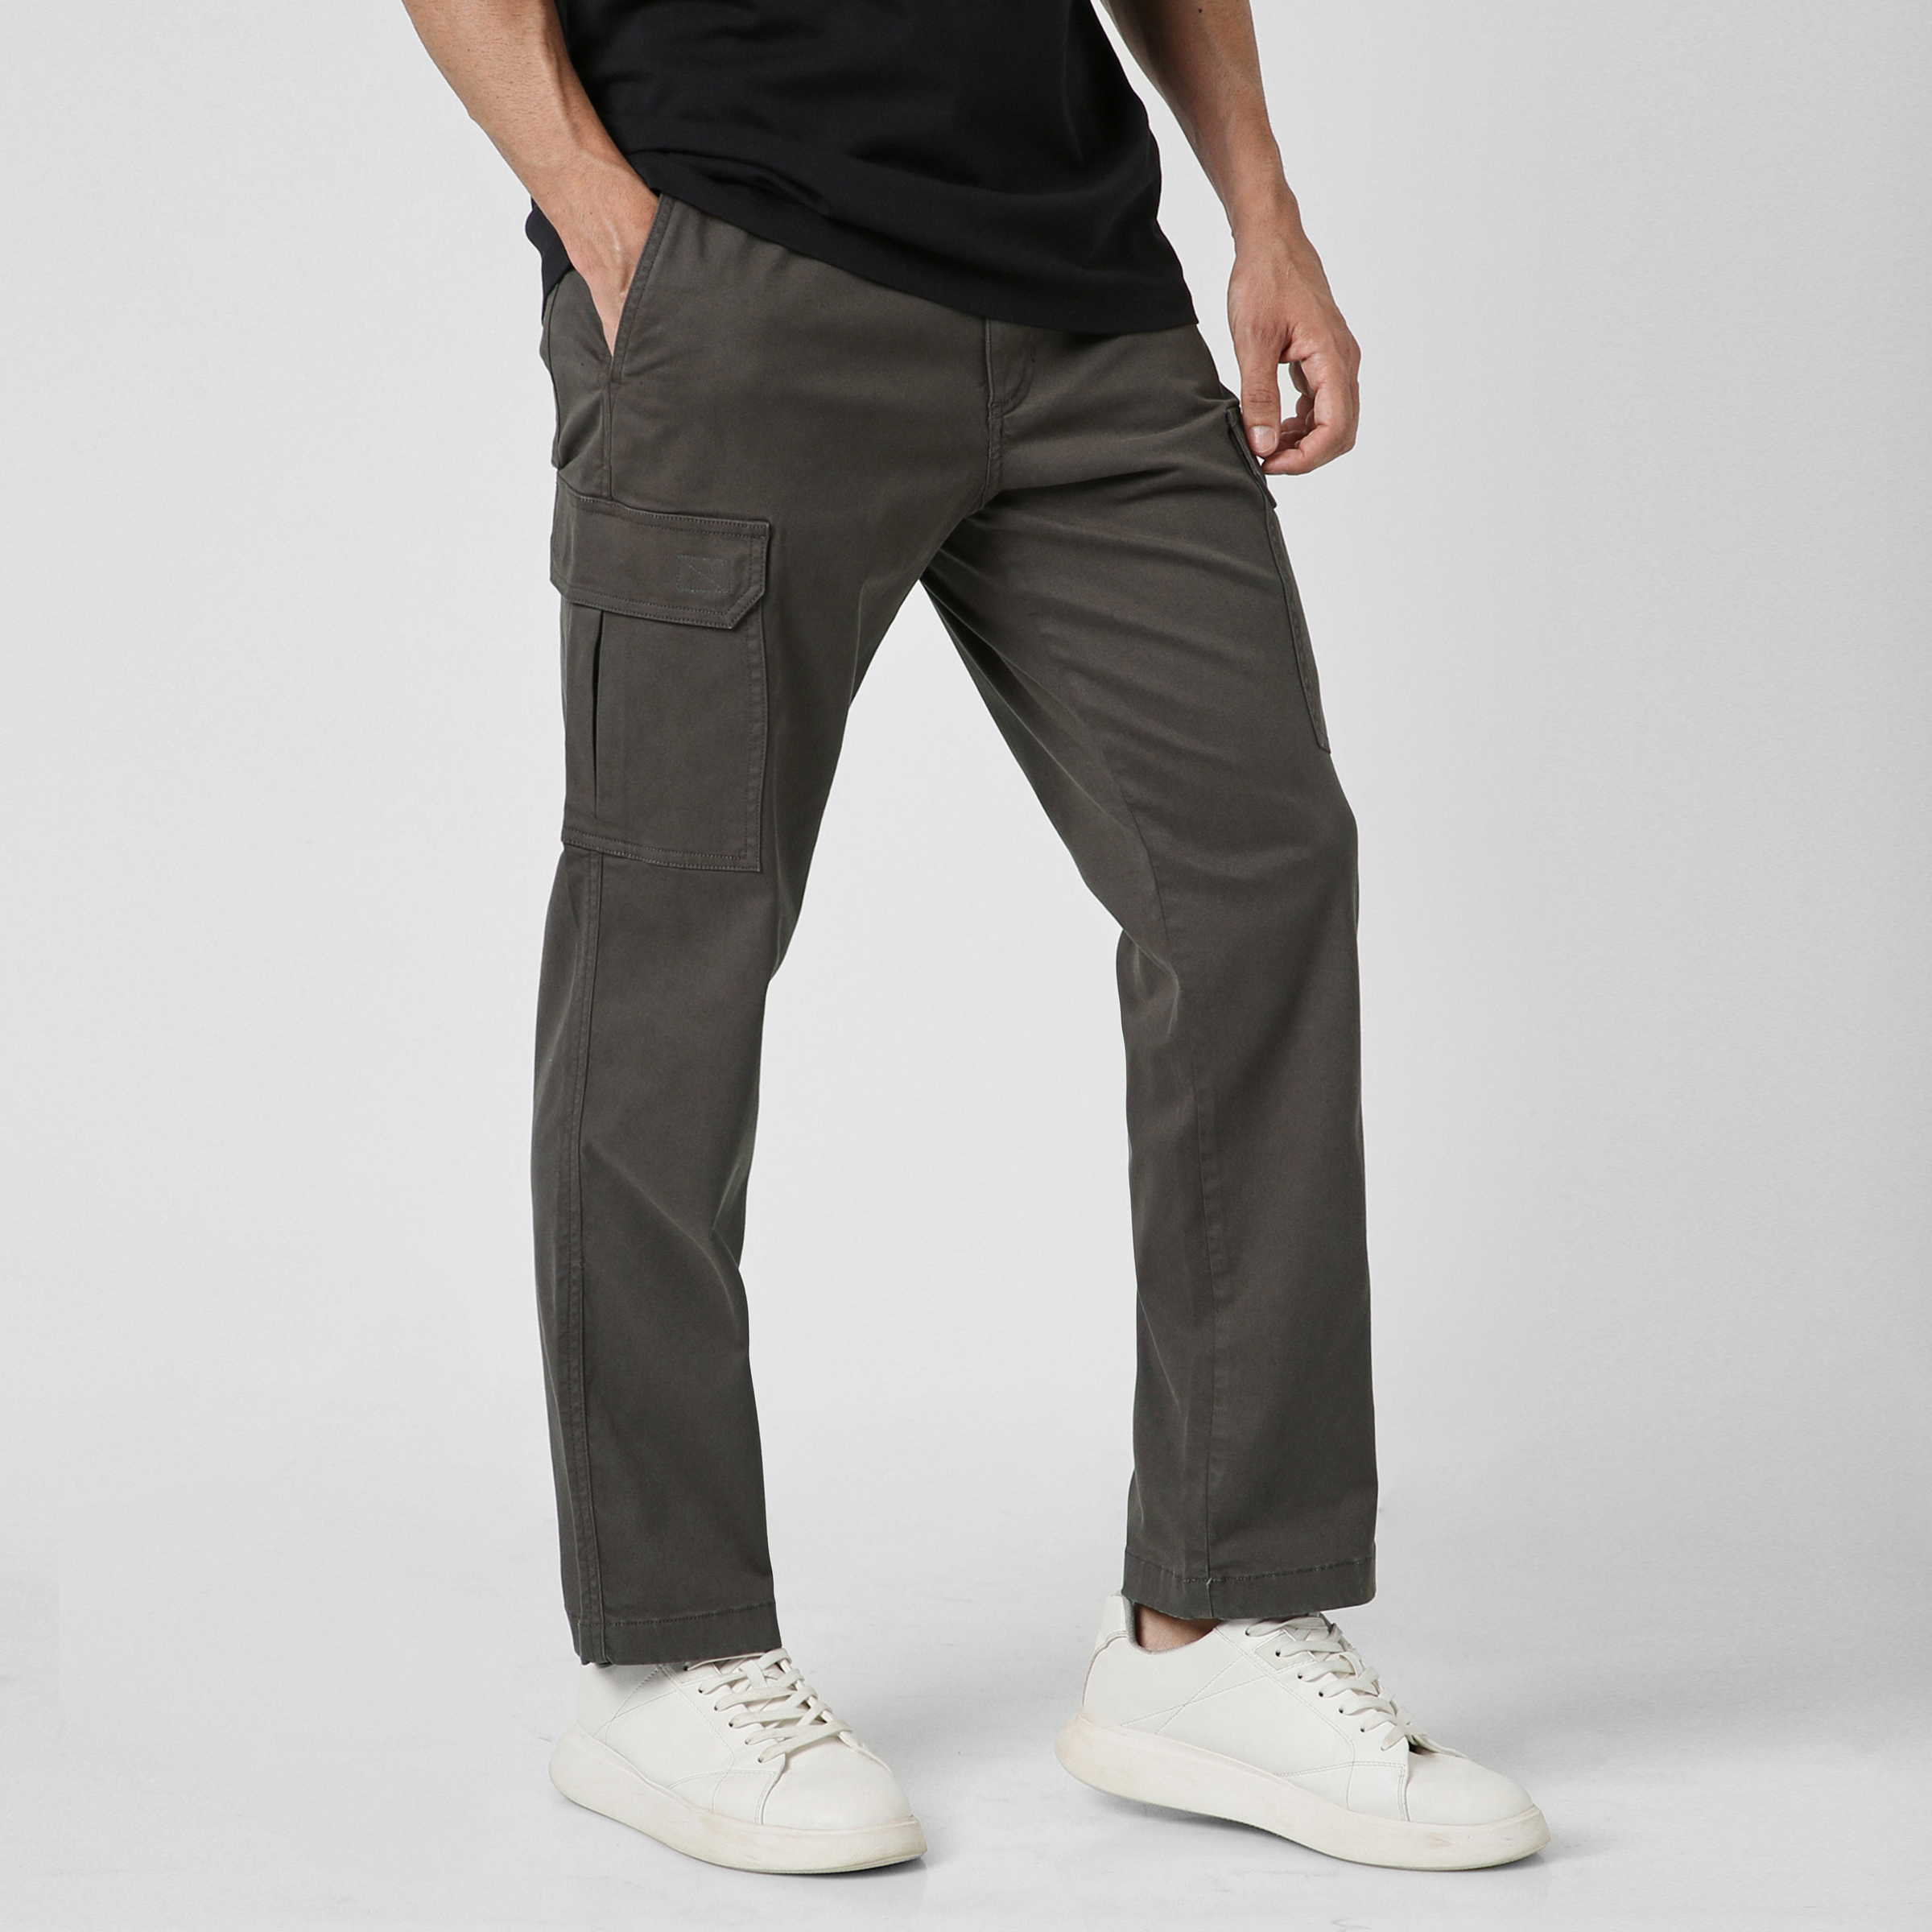 Amazon.co.jp: DXYXZD Men's Pants Hip Hop Cotton Cargo Pants Men Ankle  Stripe Casual Slim Jogger Pants Men (Color: C, Size: 34) : Clothing, Shoes  & Jewelry